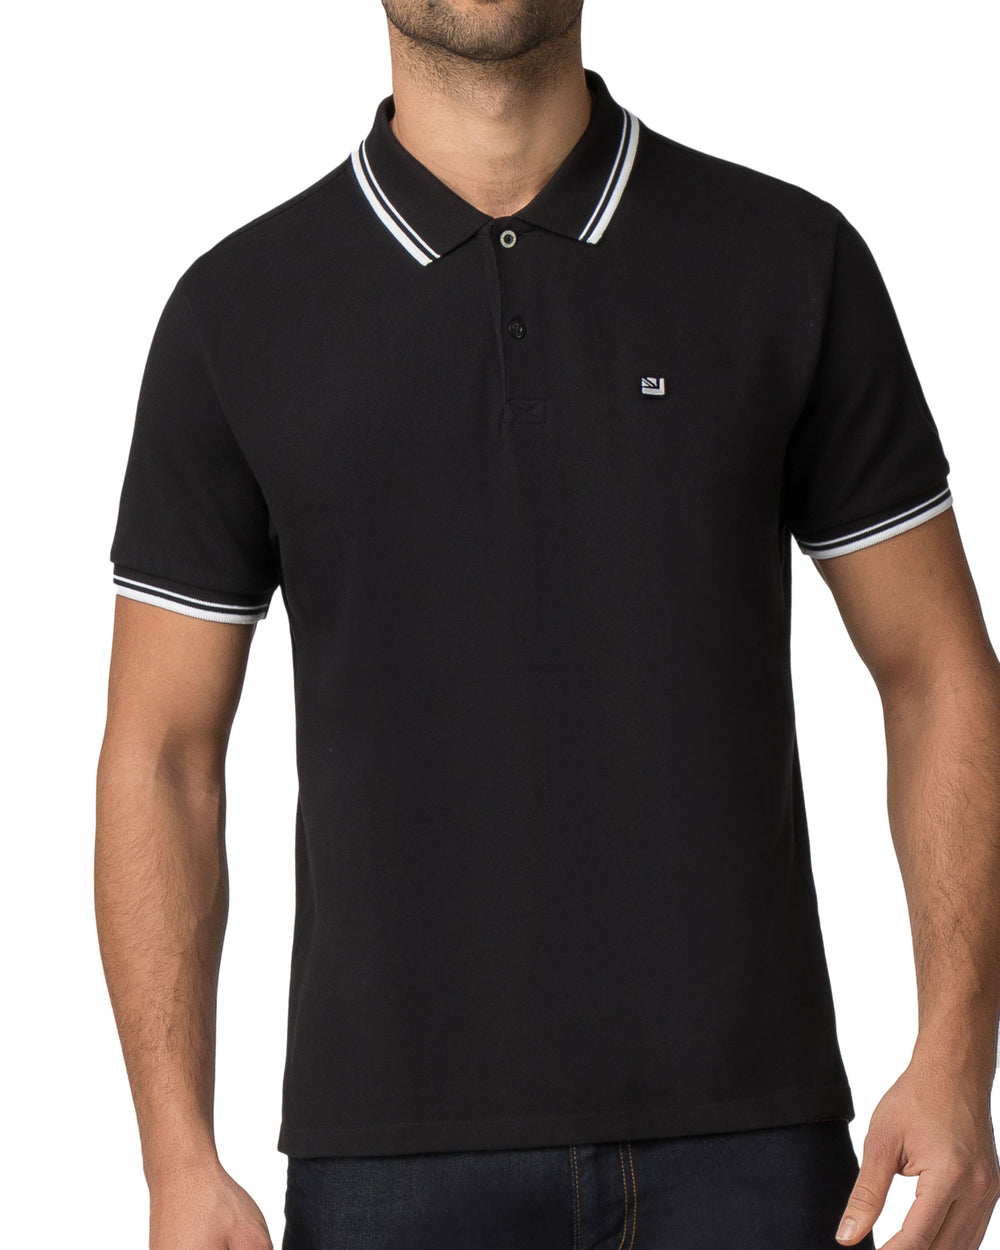 Romford Polo Shirt - True Black